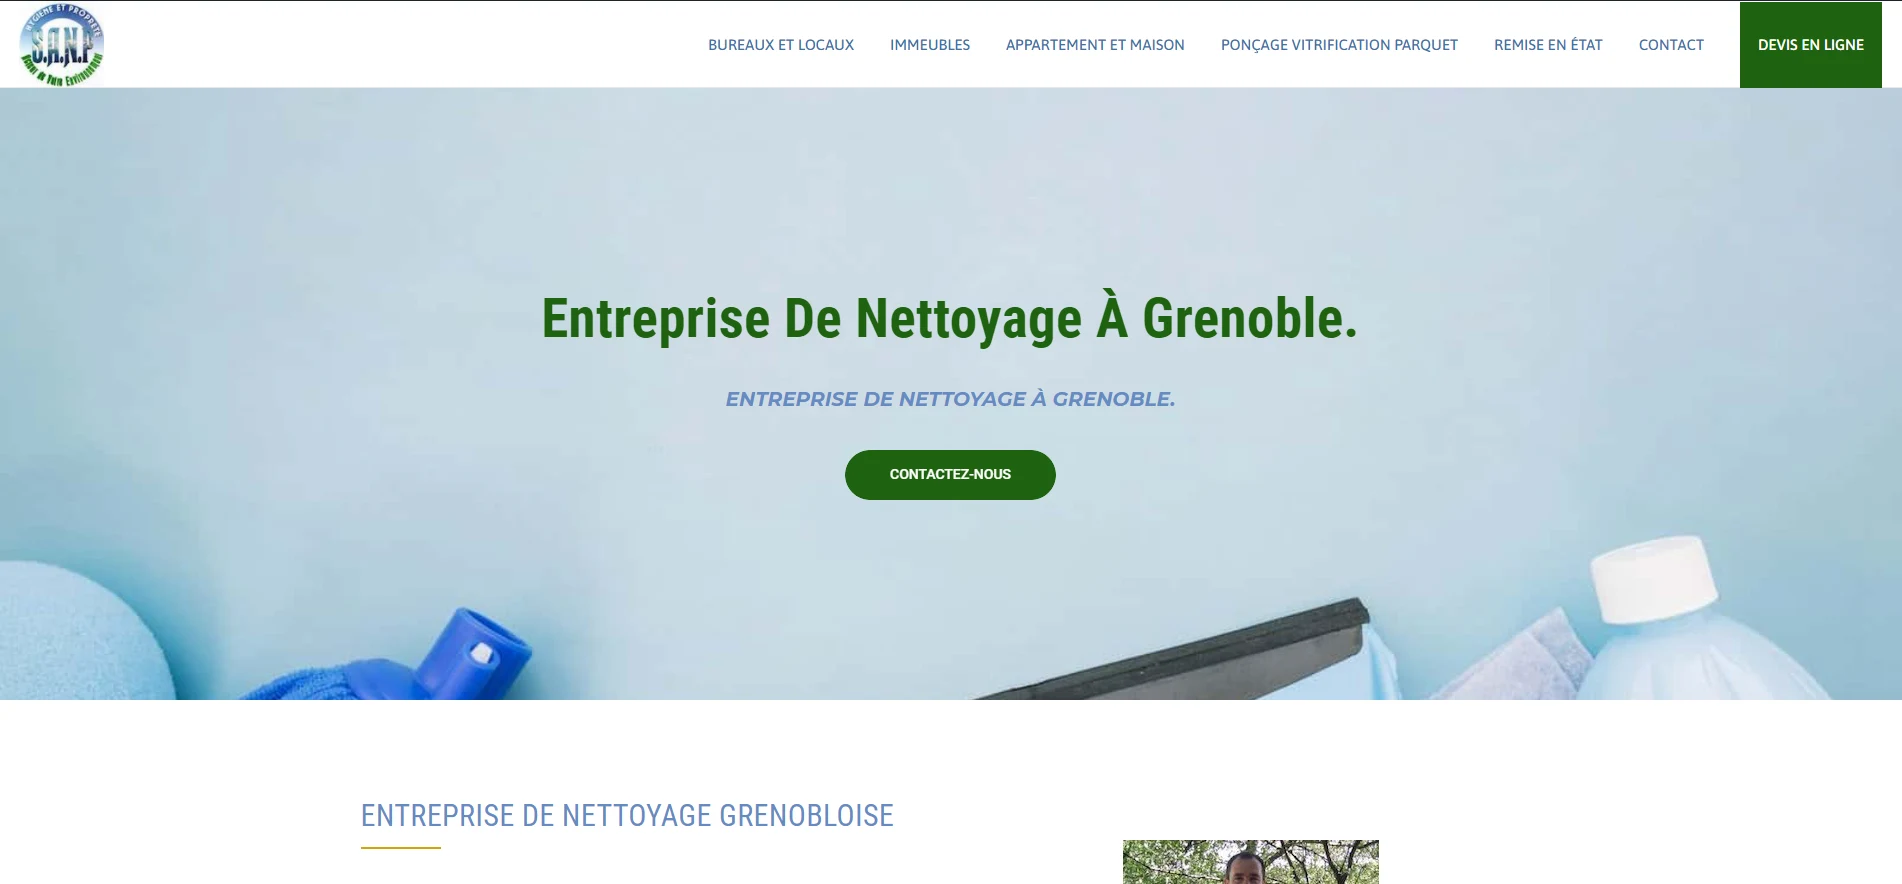 Entreprise de nettoyage Grenoble image